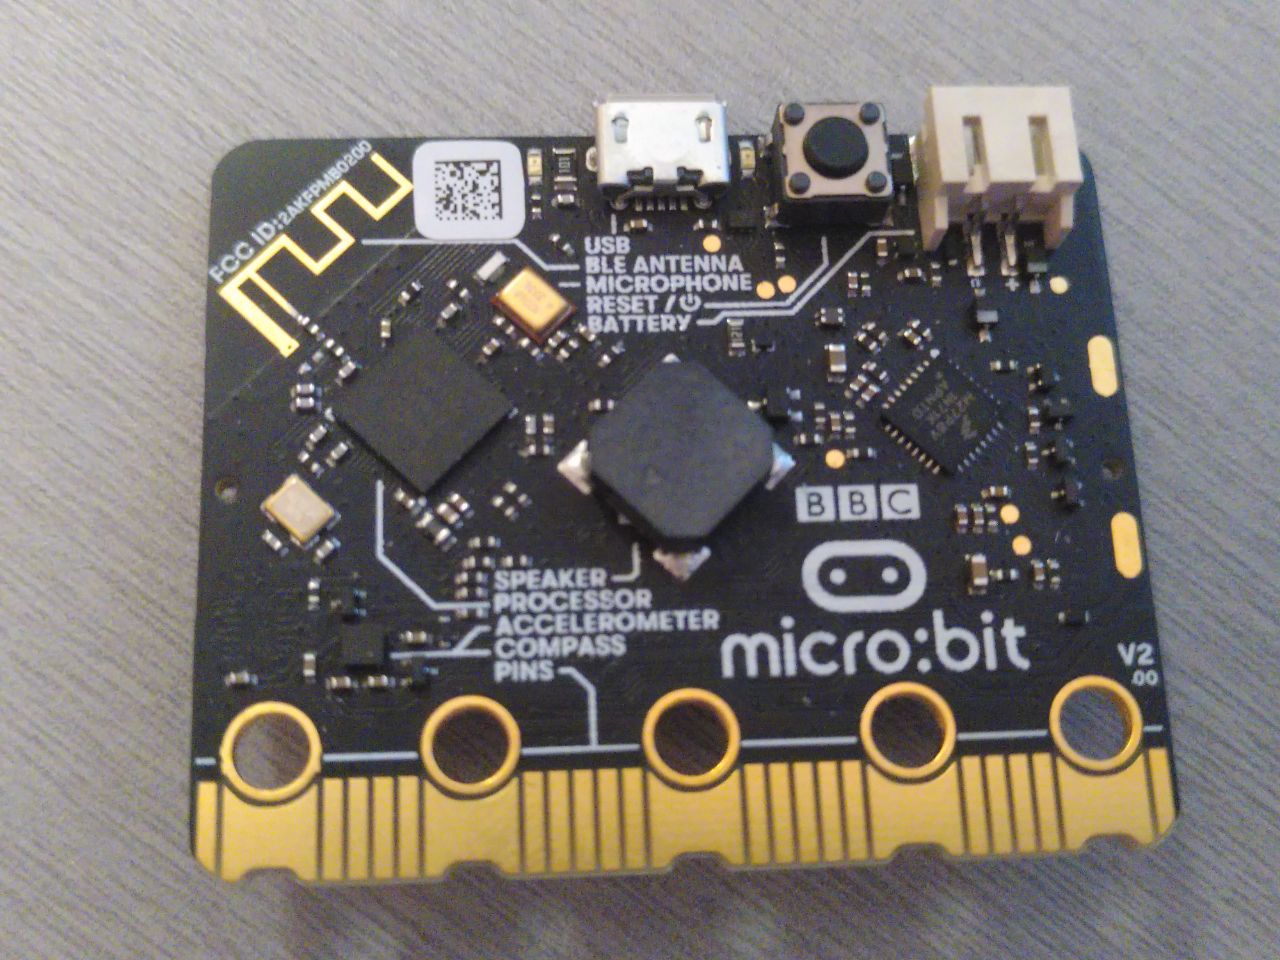 Meet the new BBC micro:bit